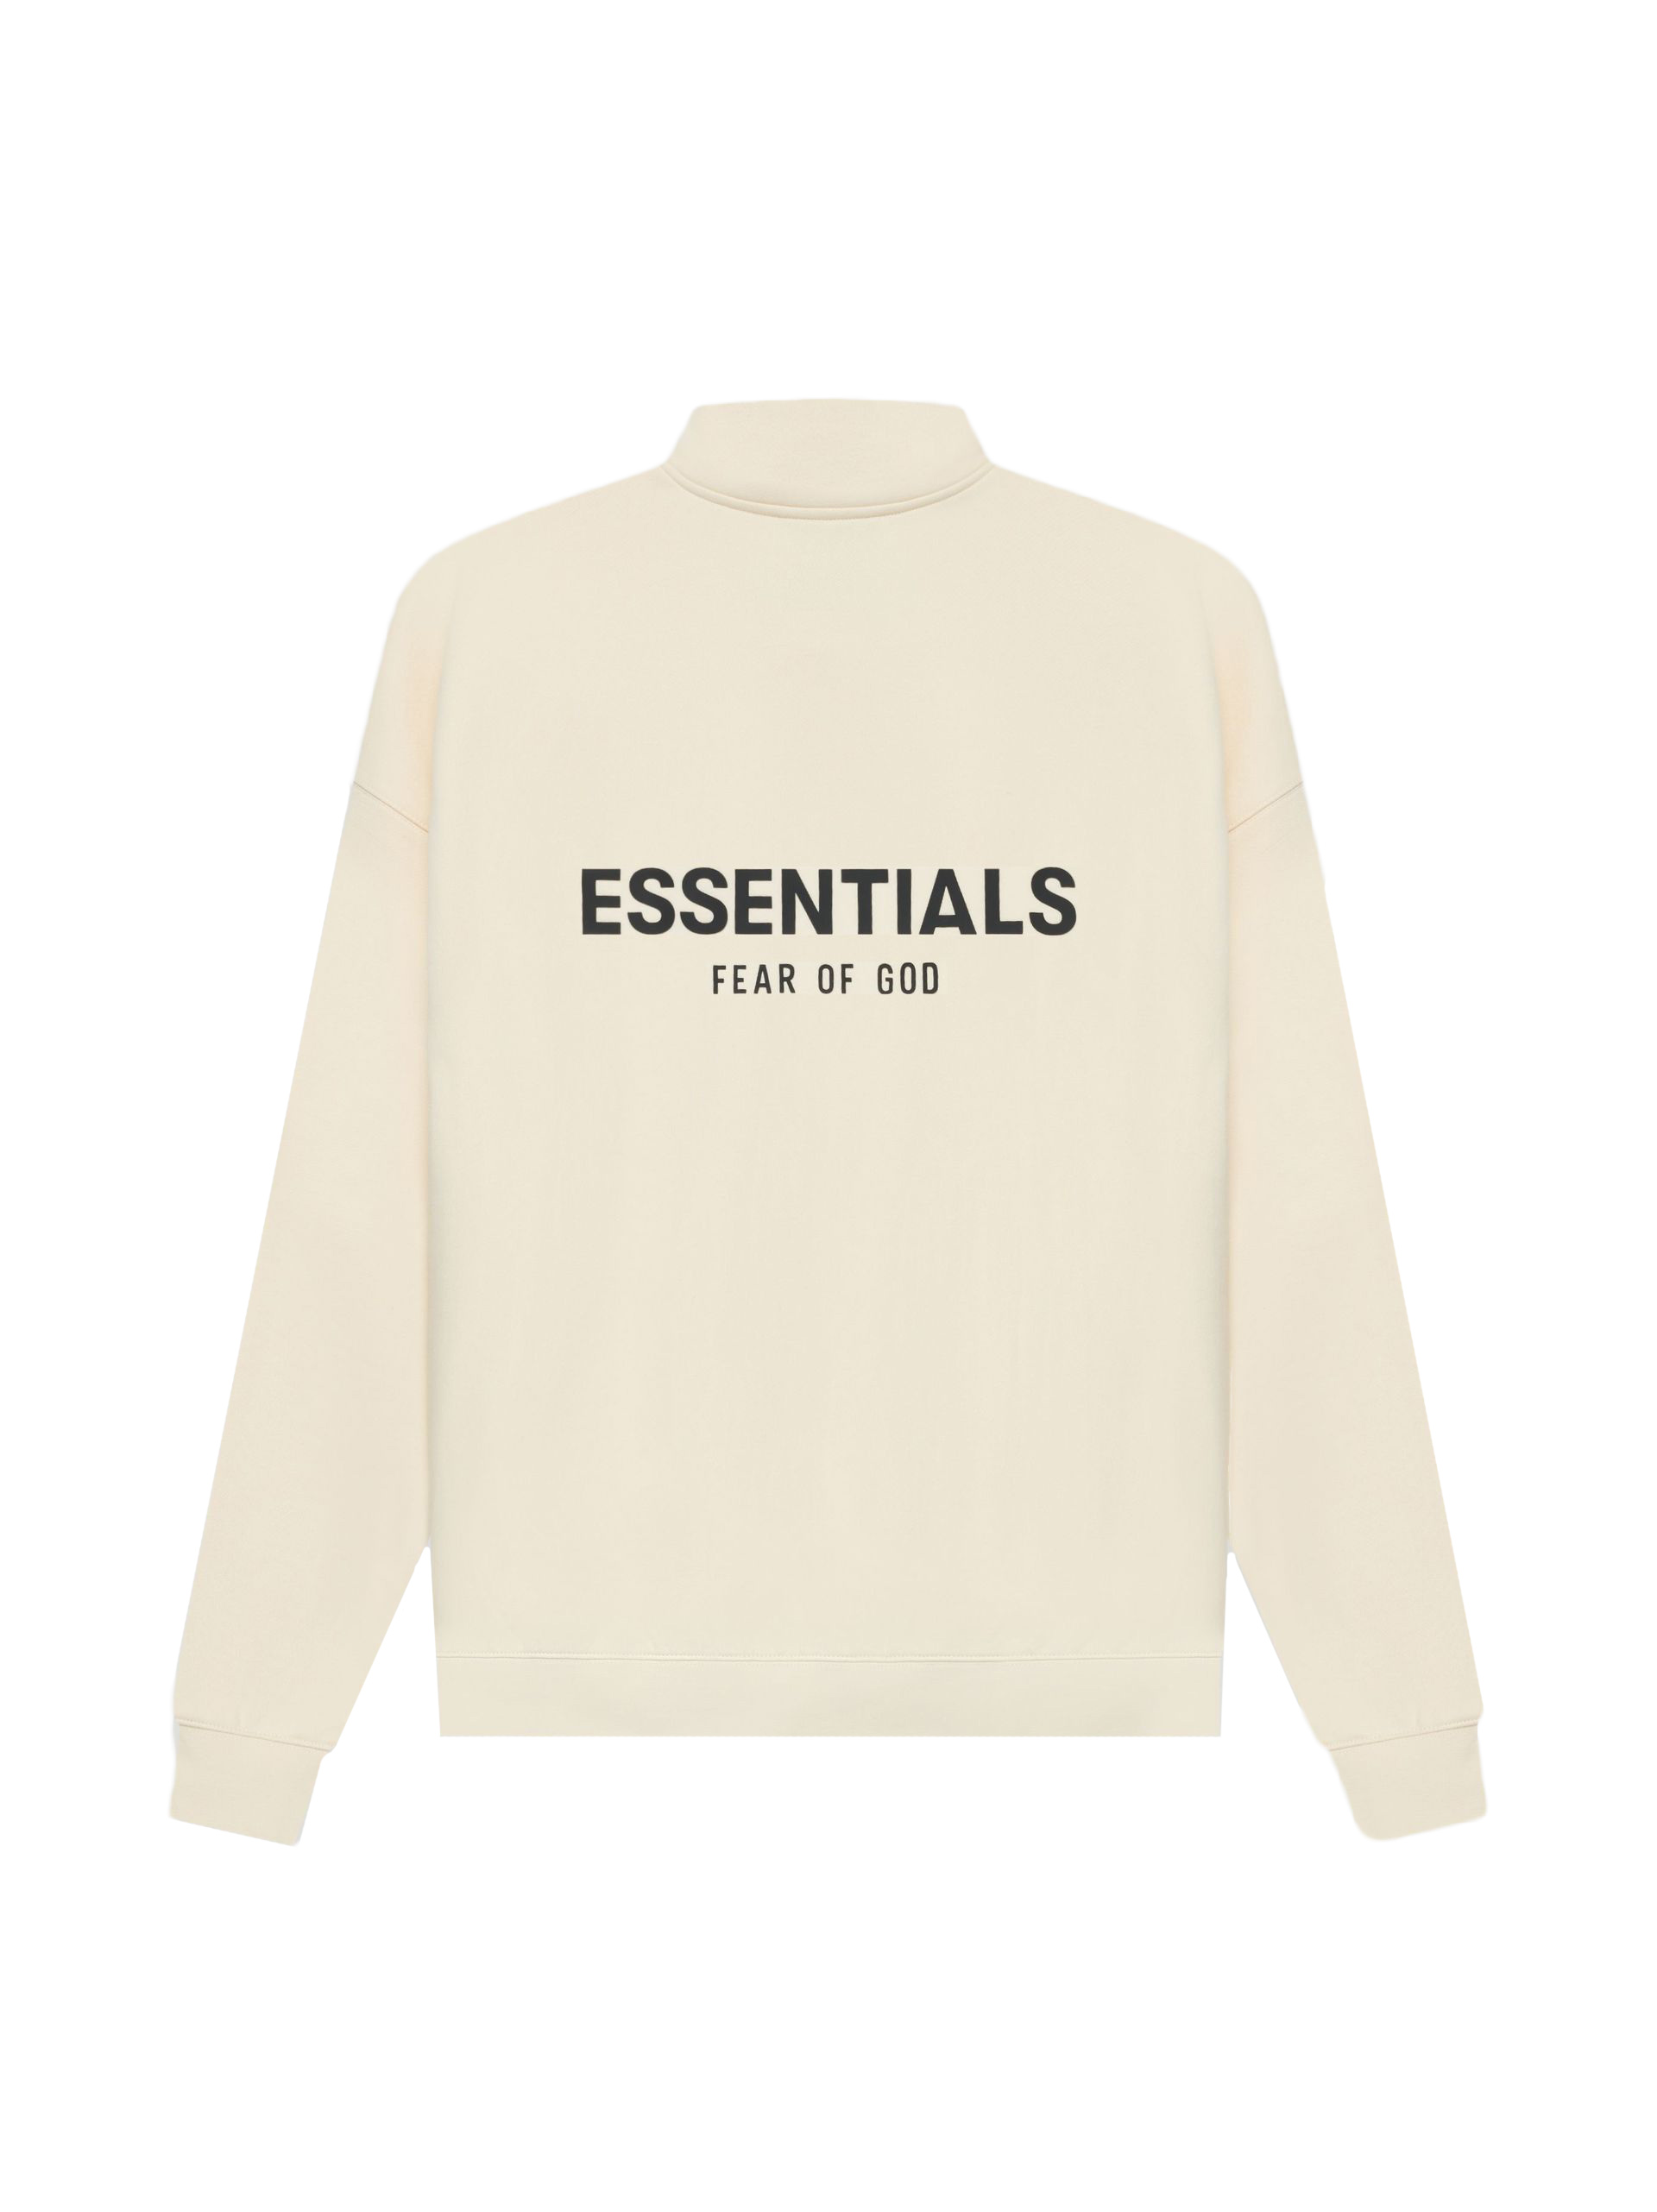 Fear of God Essentials Half Zip Sweater Cream/Buttercream - SS21 - US